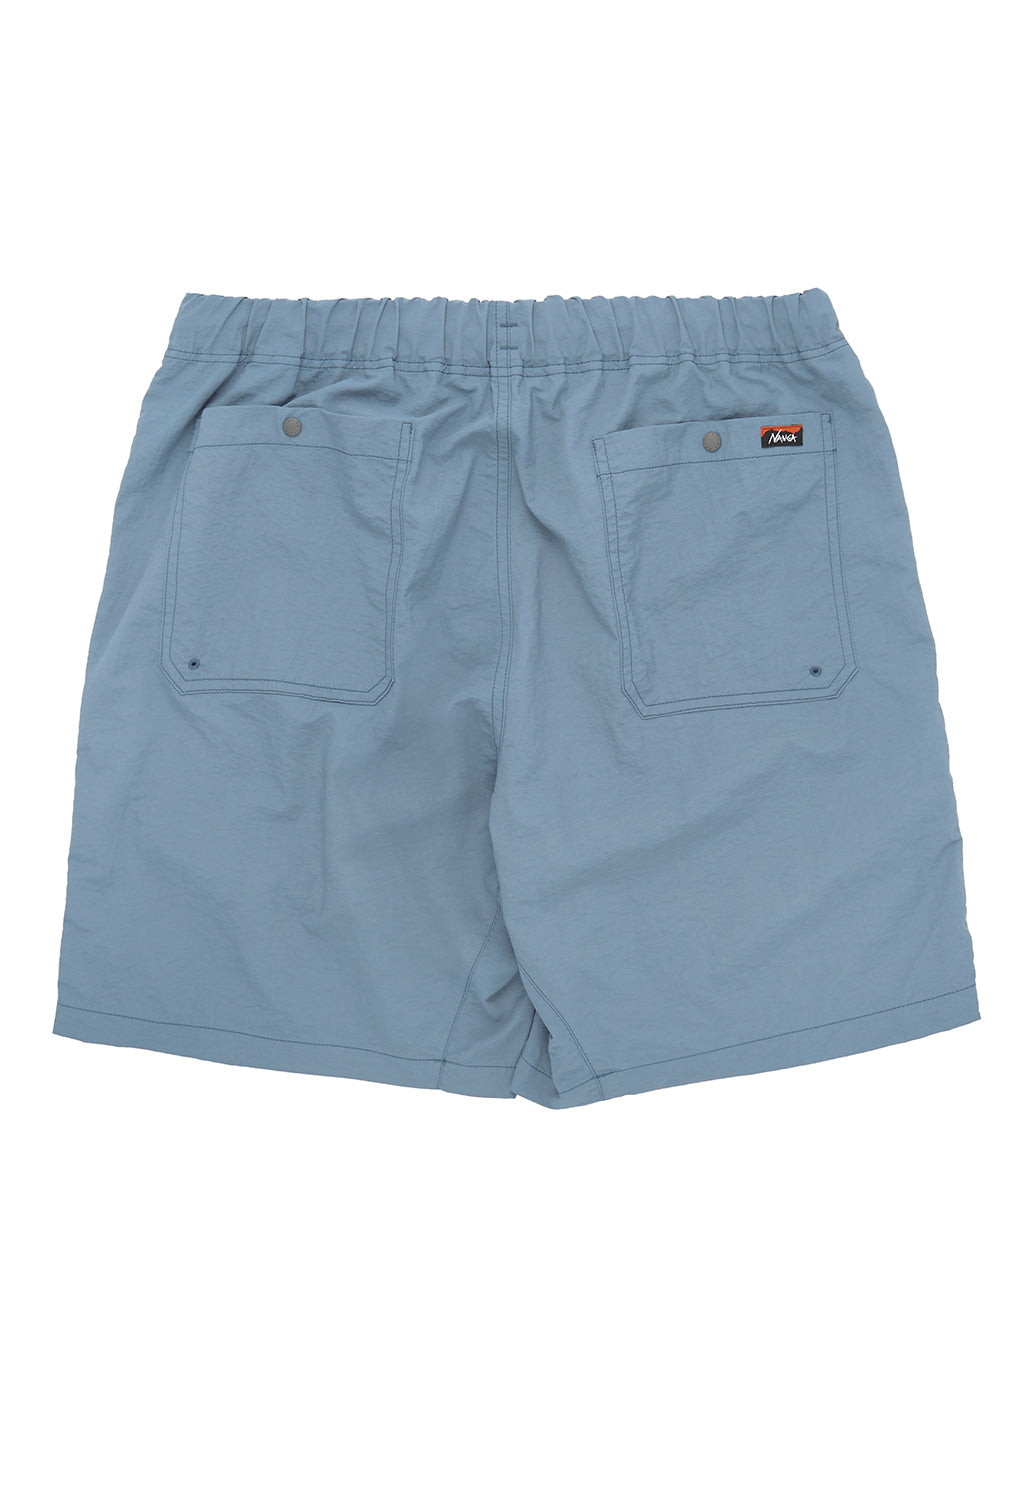 Nanga Men's Nylon Tusser Easy Shorts - Light Blue